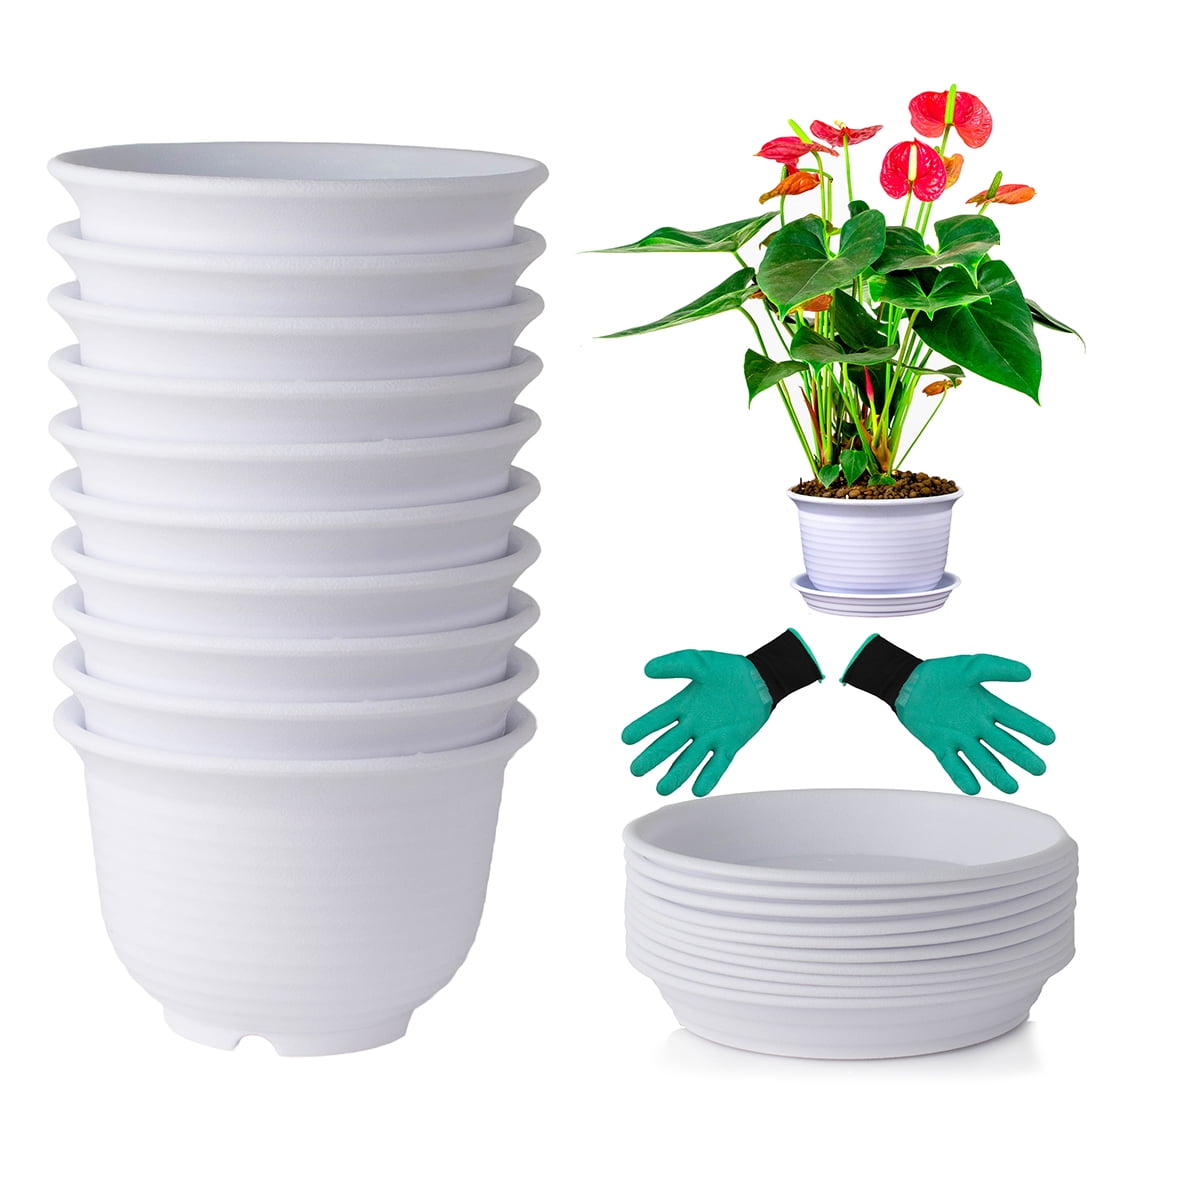 Colorful Flower Pots With Saucer Plastic Plant Pots Home Garden Decor 10 Colors